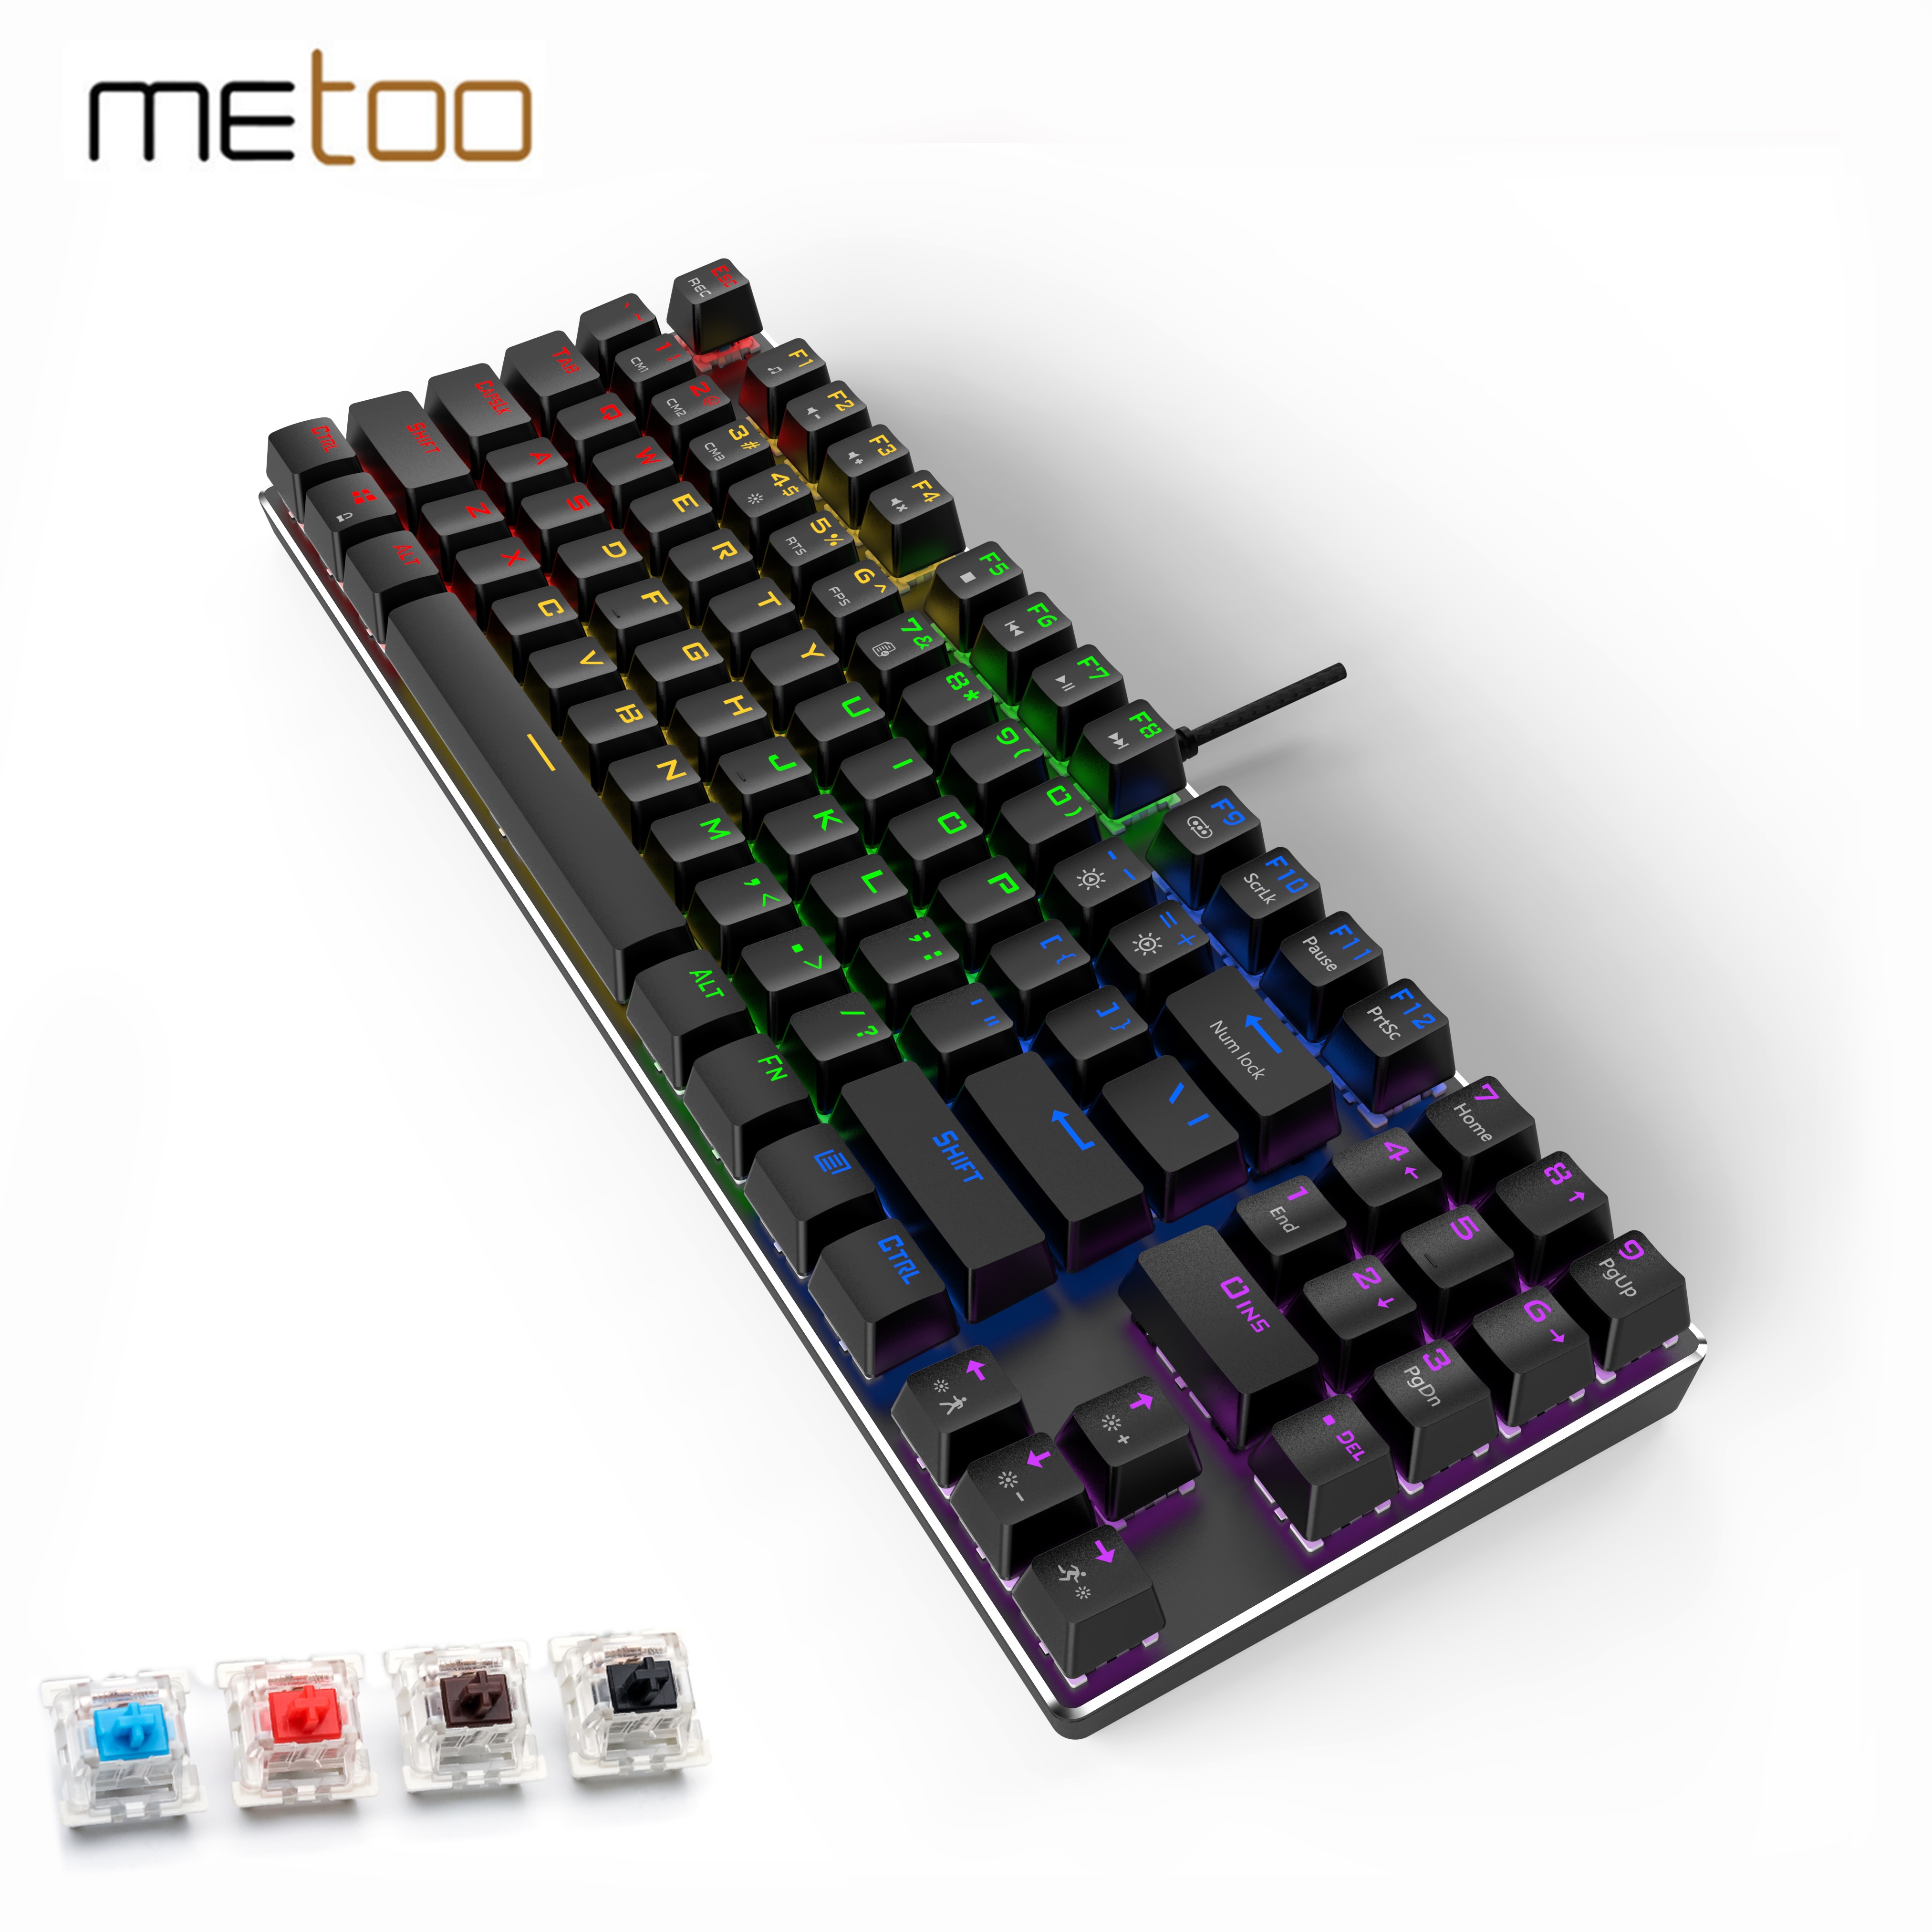 Metoo-teclado mecânico gamer com fio, 89 teclas antighosting, azul, vermelho, marrom, interruptor...